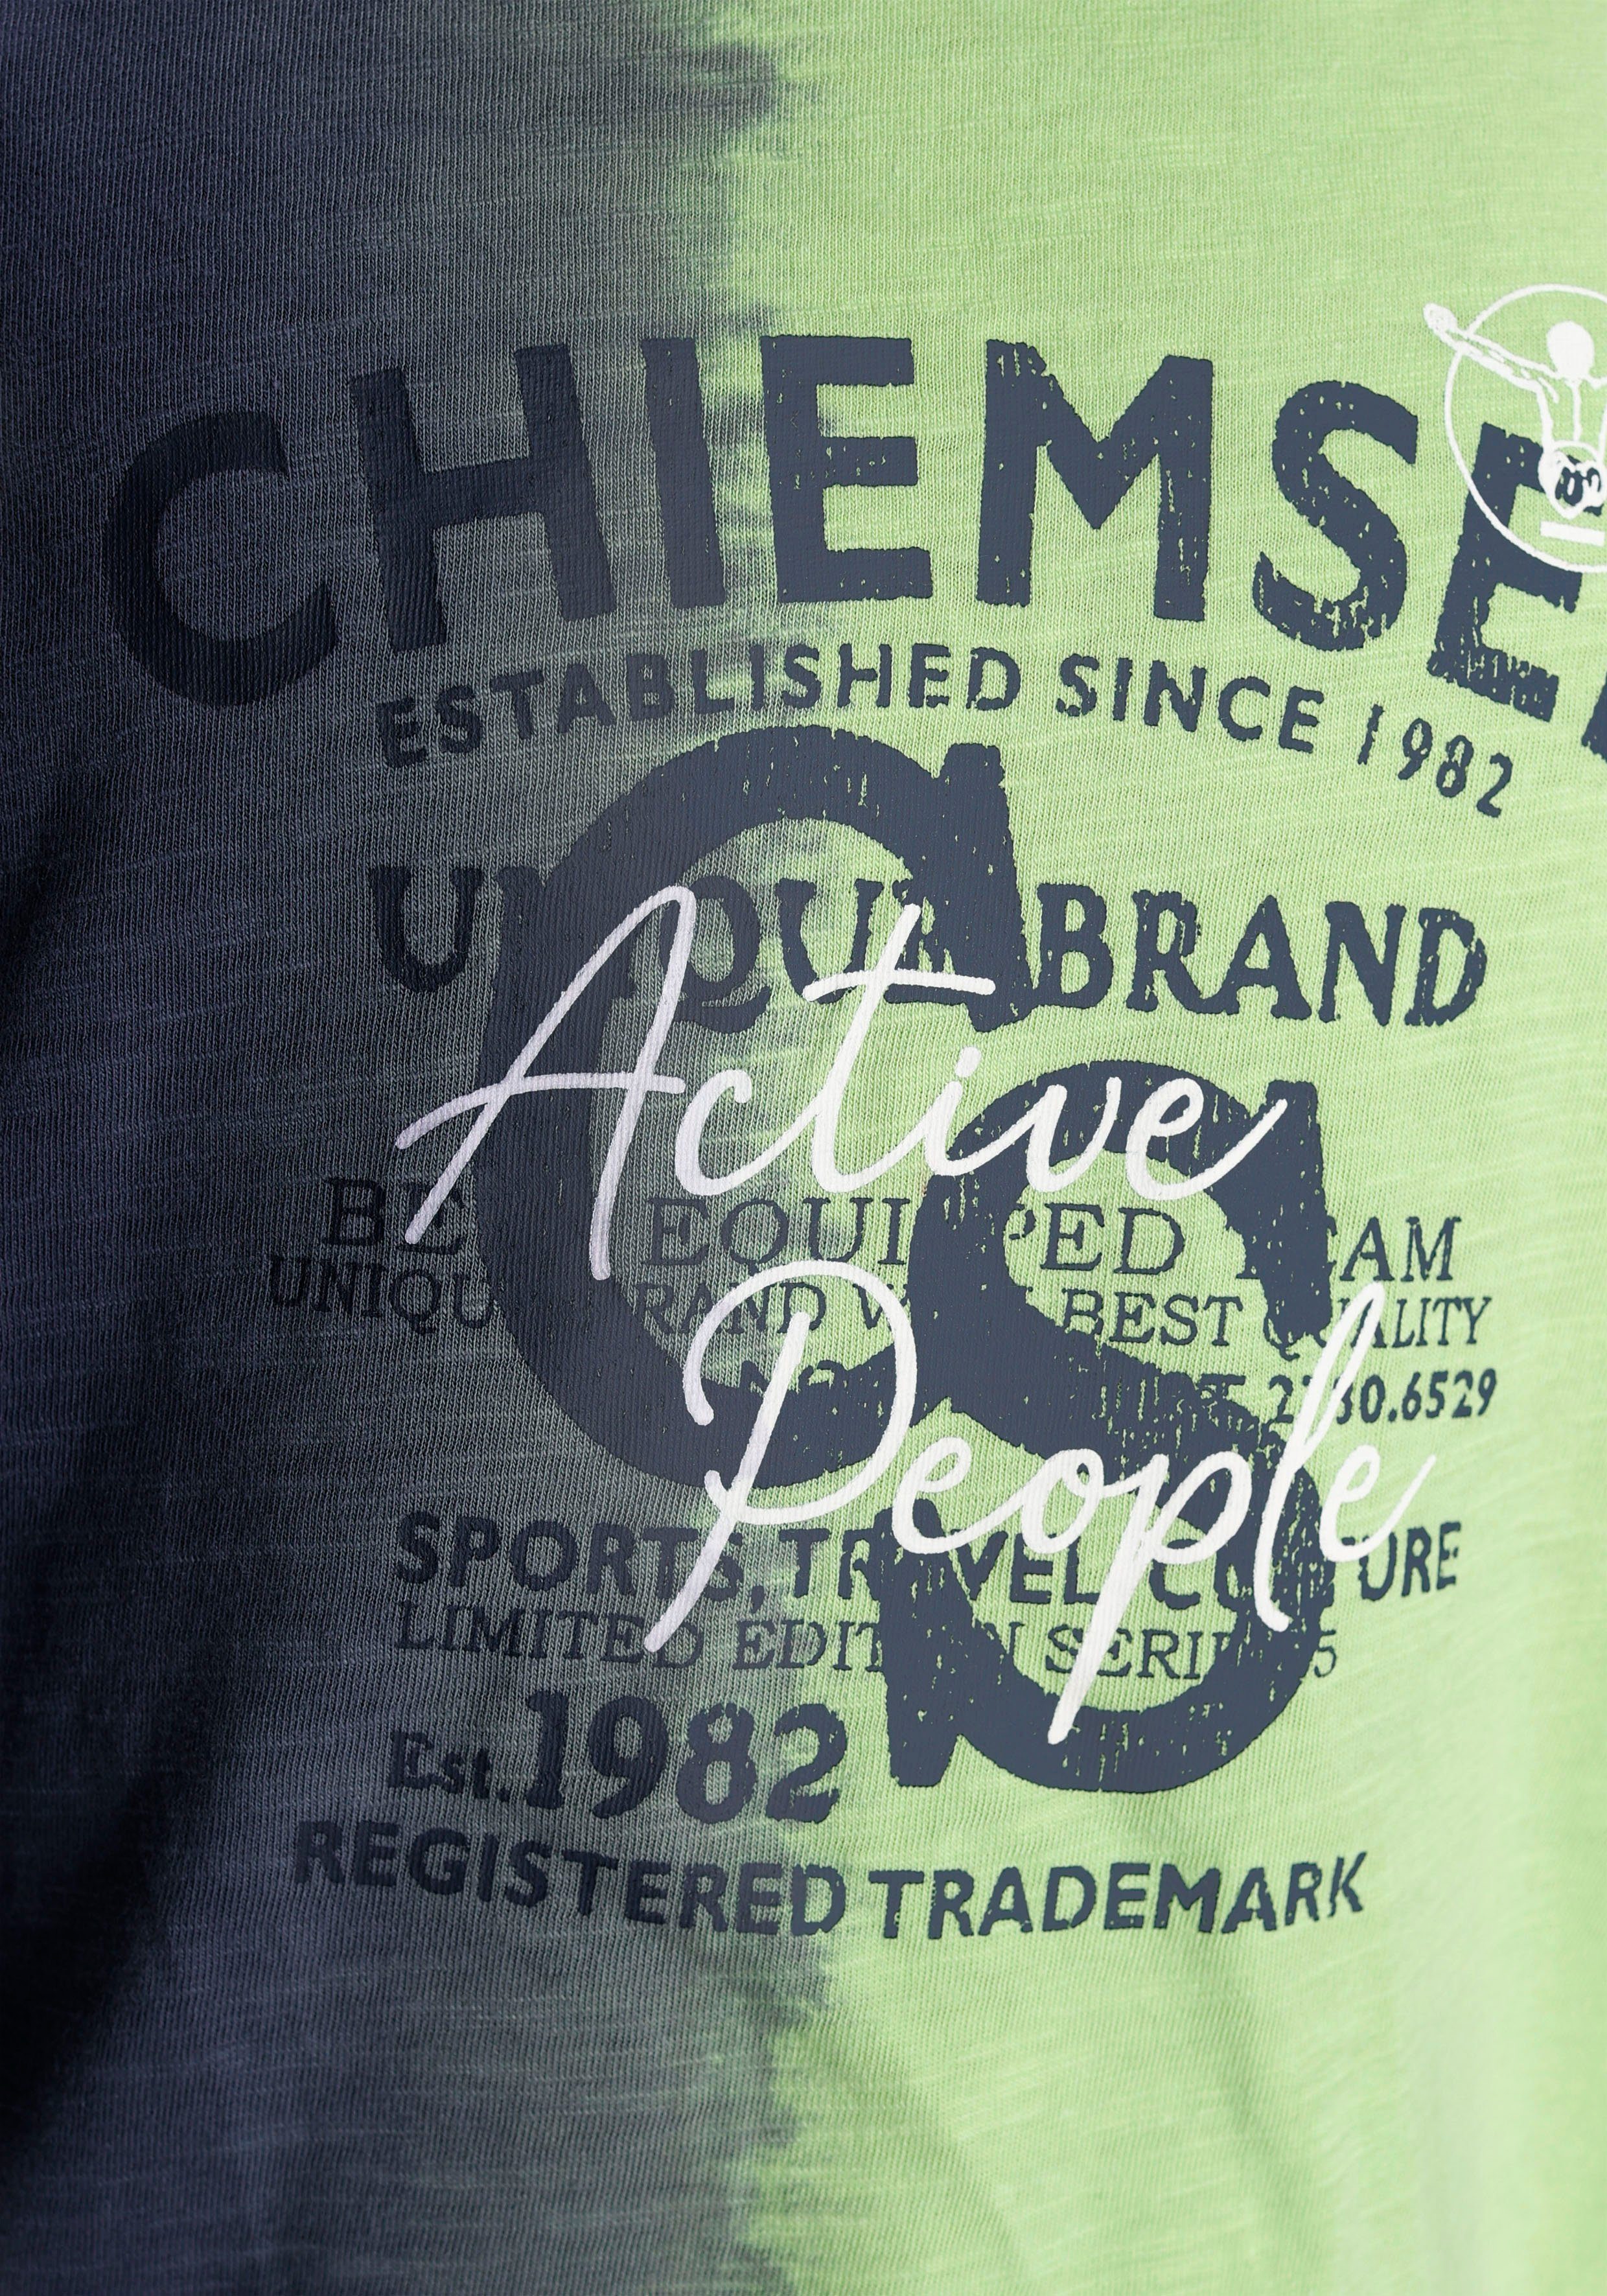 Chiemsee T-Shirt Farbverlauf mit Farbverlauf vertikalem